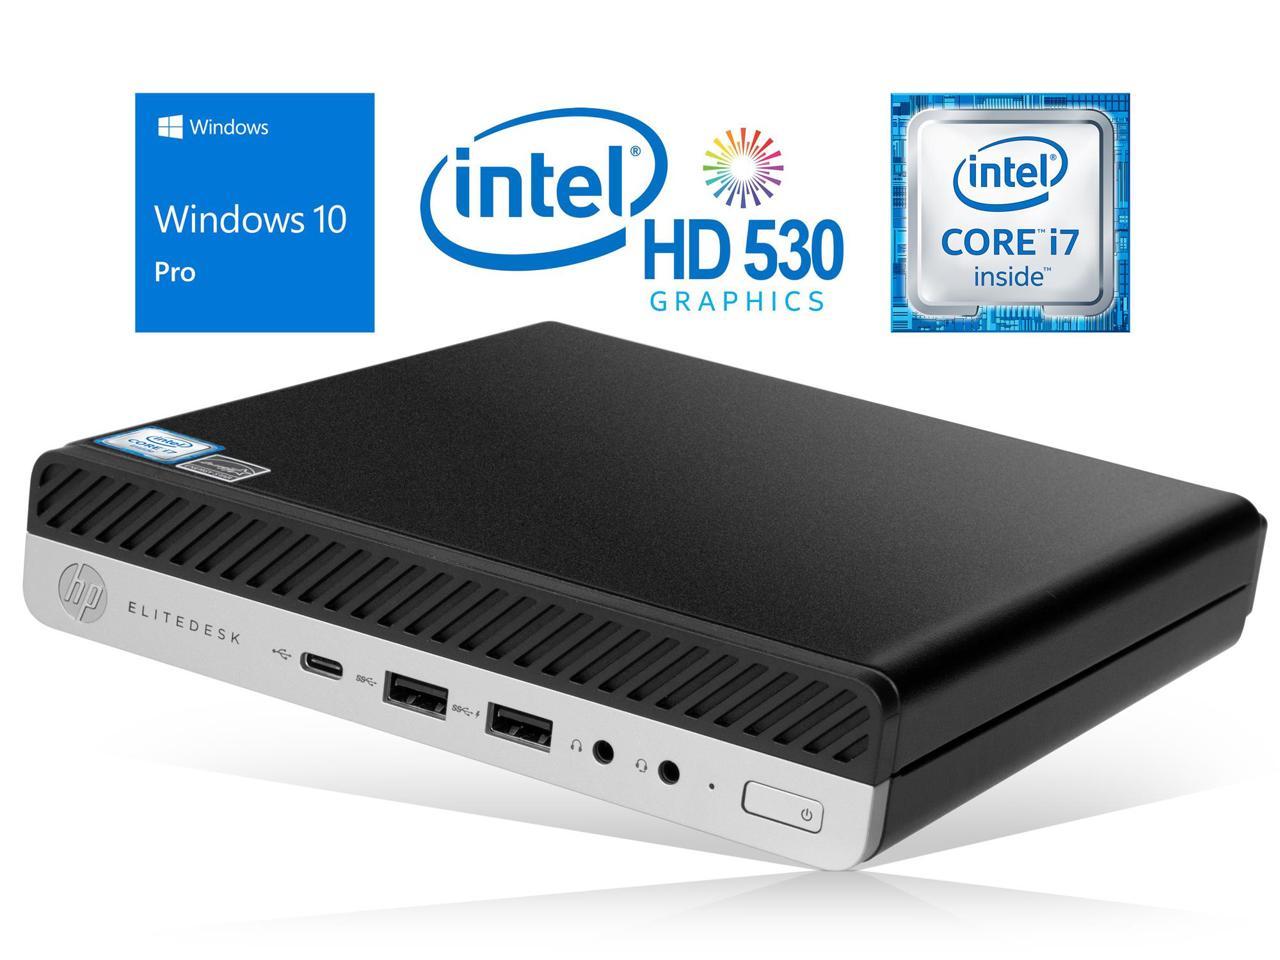 HP EliteDesk 800 G3 Mini PC, Intel Core i7-6700 Upto 4.0GHz, 32GB RAM, 256GB NVMe SSD + 1TB HDD, DisplayPort, Wi-Fi, Bluetooth, Windows 10 Pro